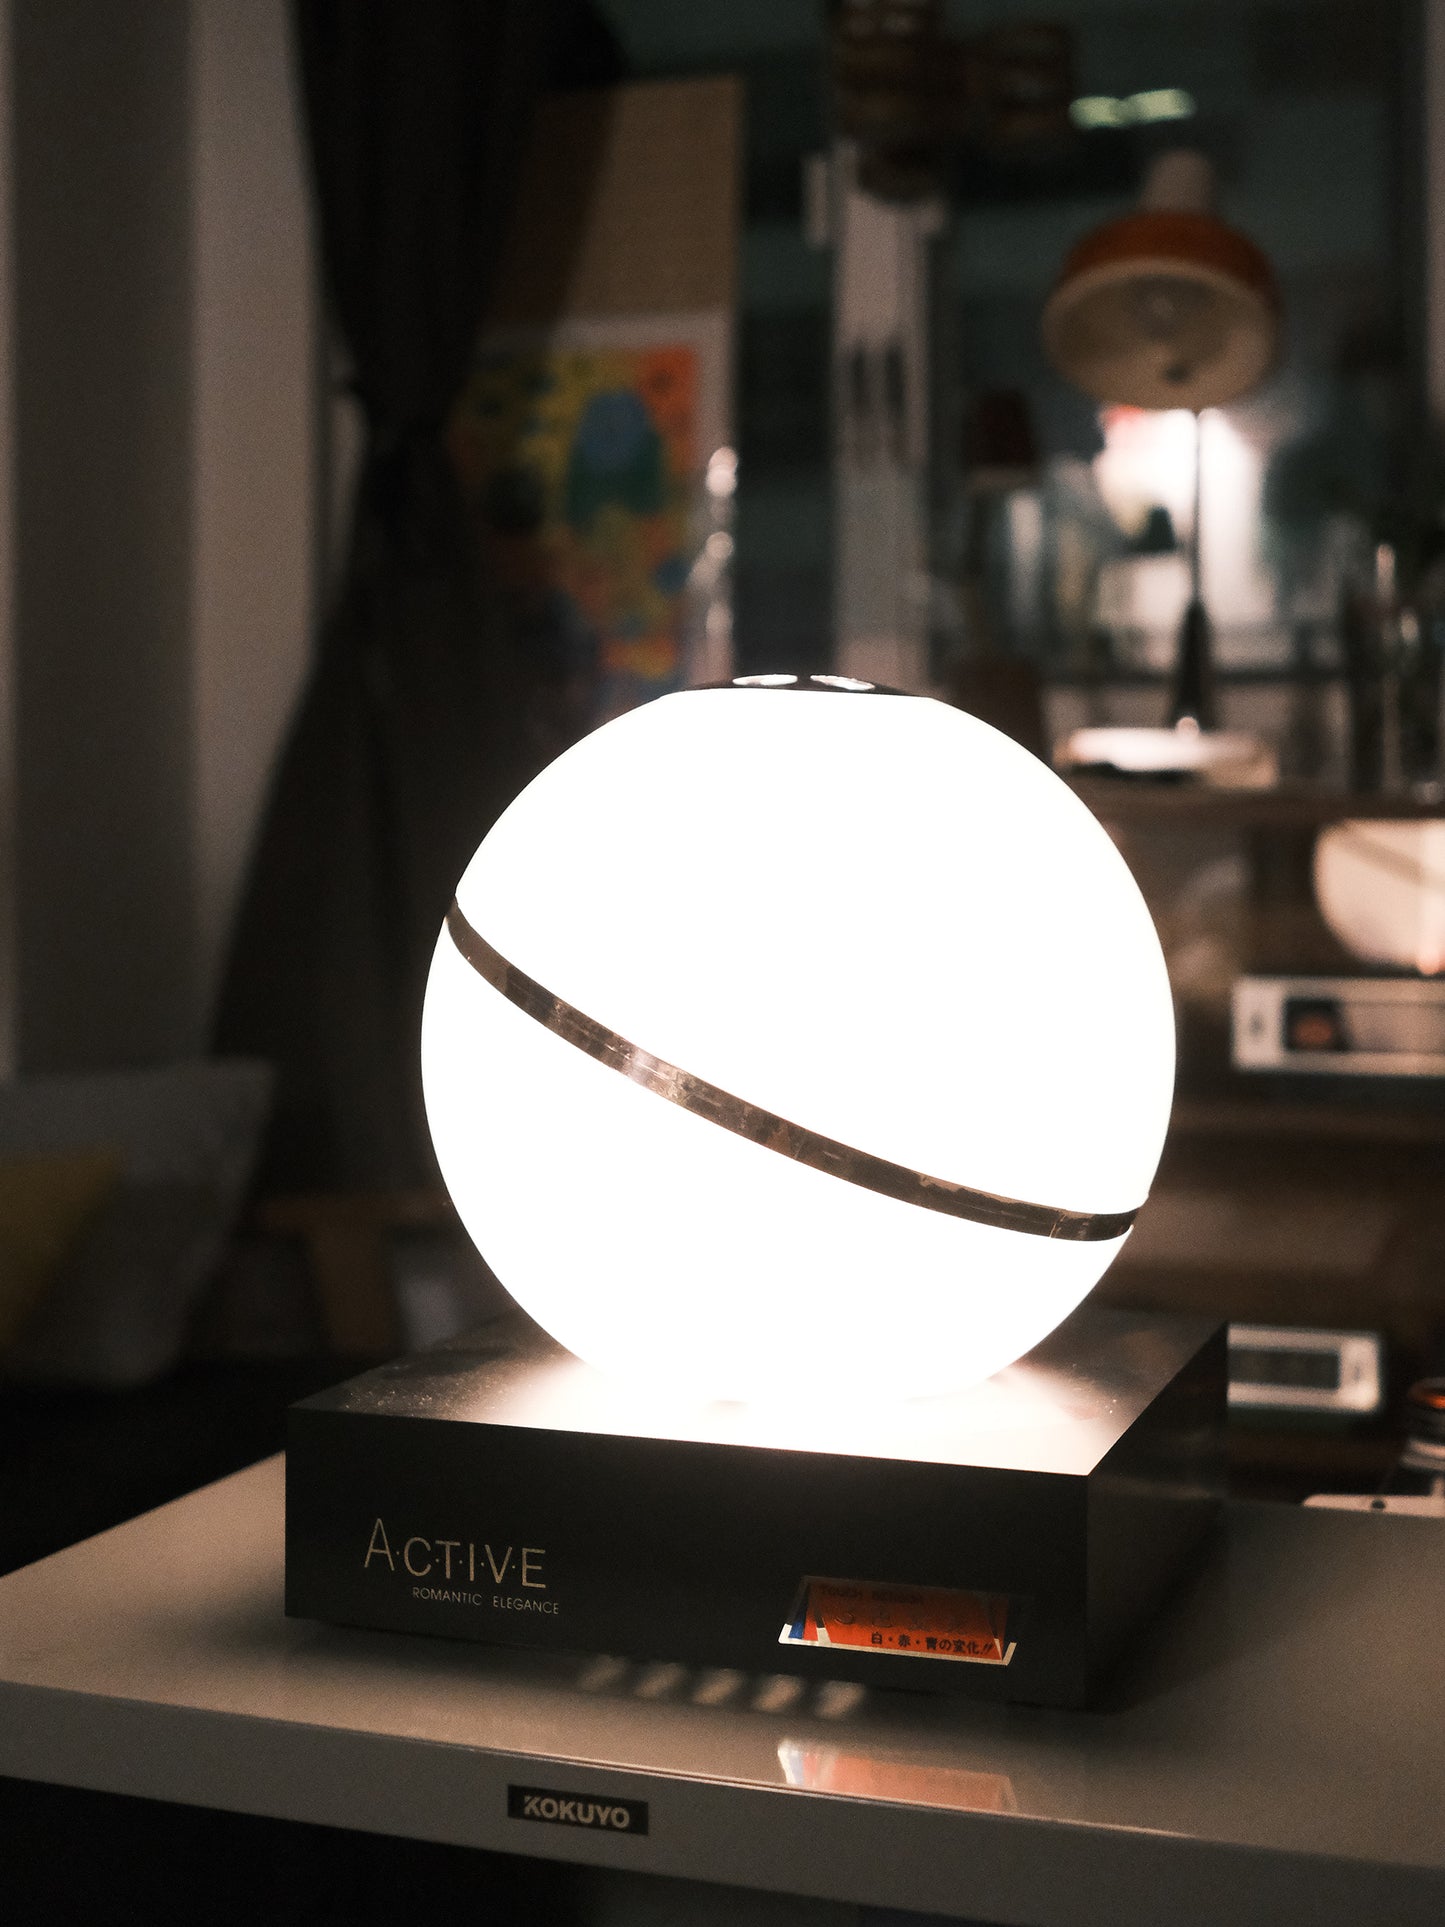 日本 昭和 圓形球狀 Touch Sensor Light 三色 觸控感應燈 擡燈 Lamp